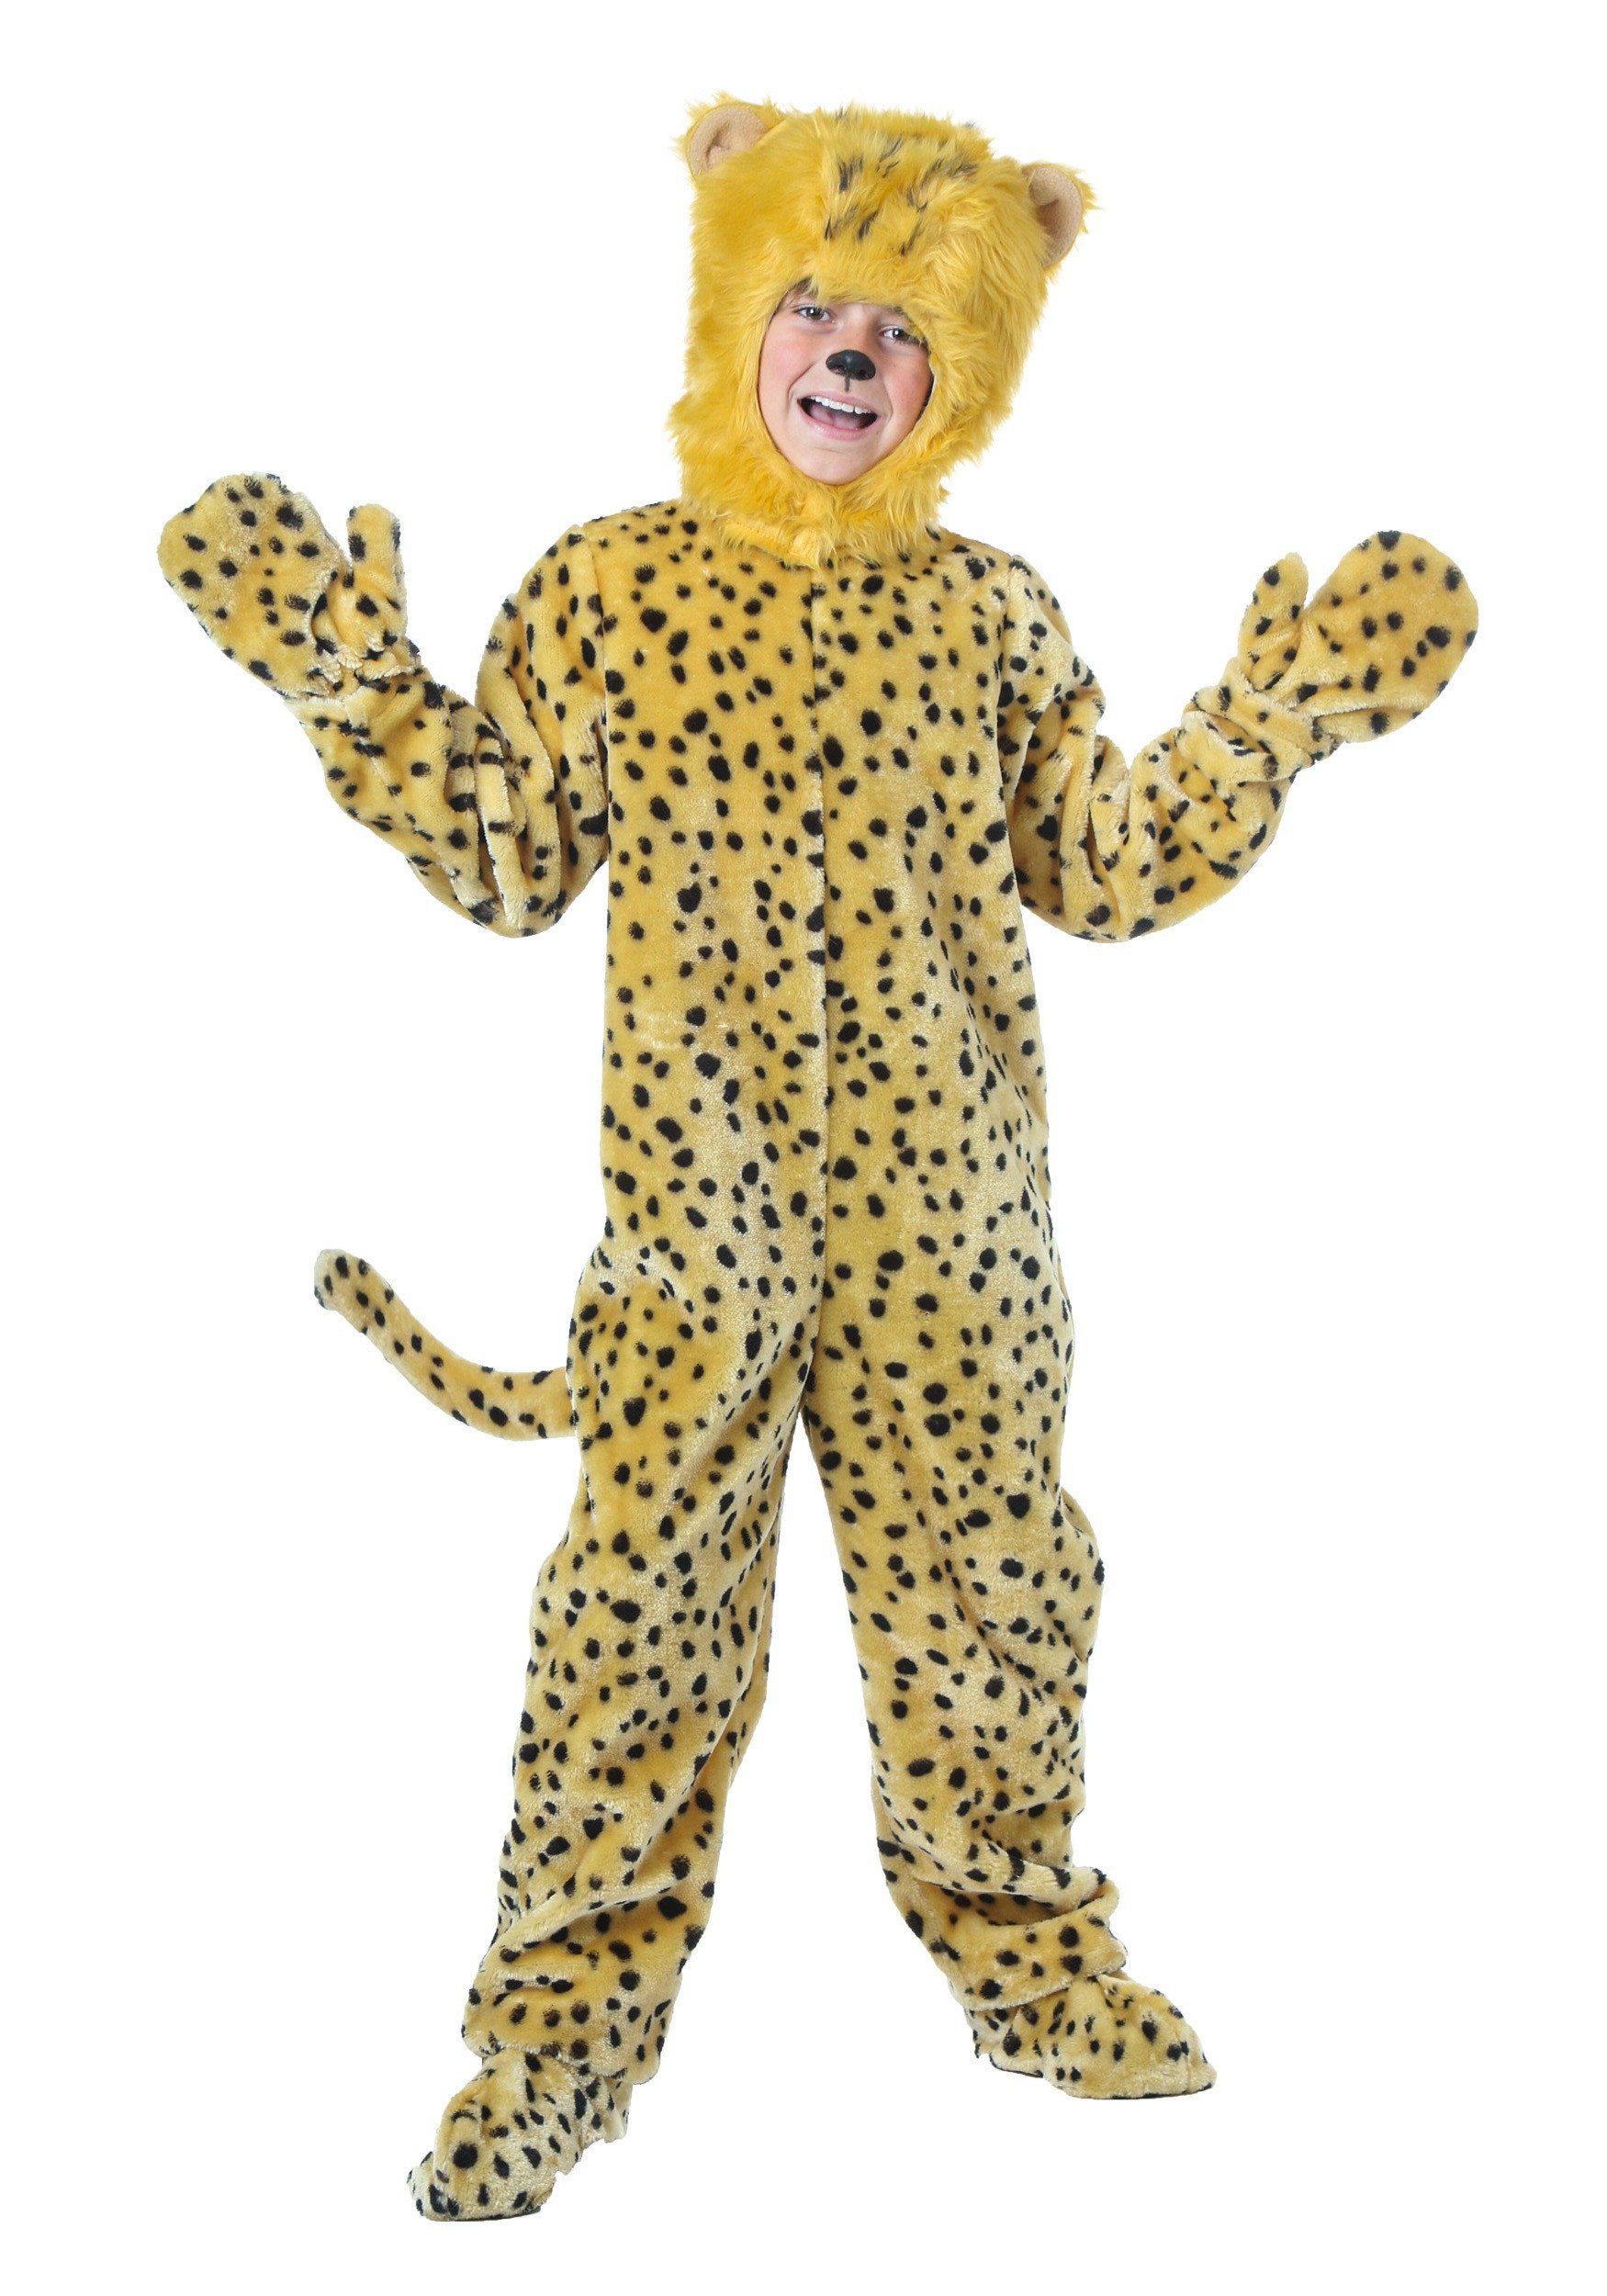 DIY Cheetah Costumes
 Child Cheetah Costume